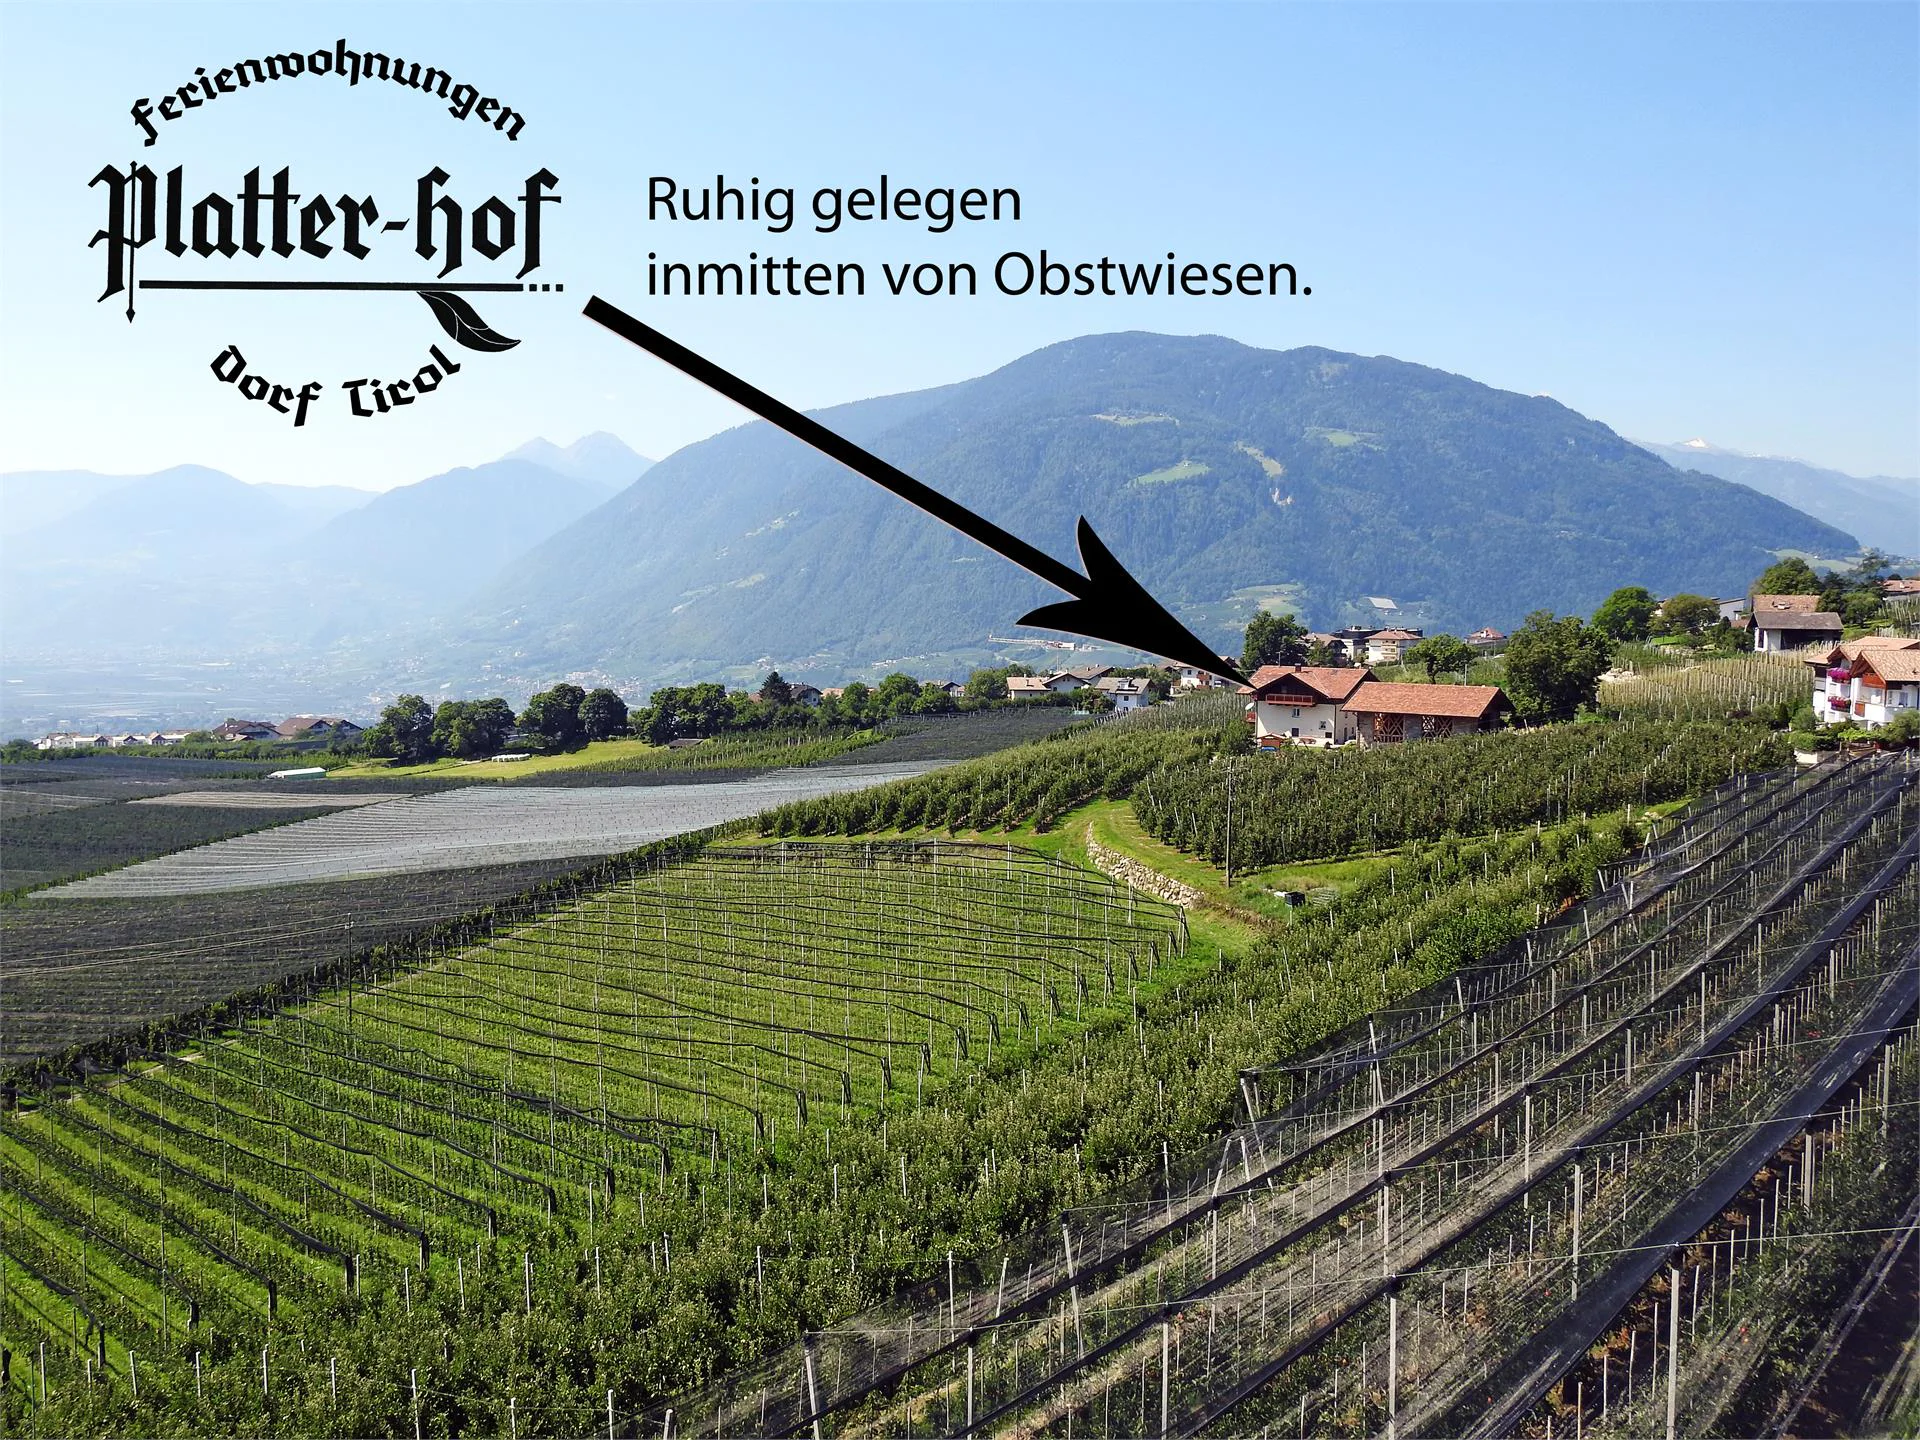 Ferienwohnungen Platterhof Tirol/Tirolo 2 suedtirol.info